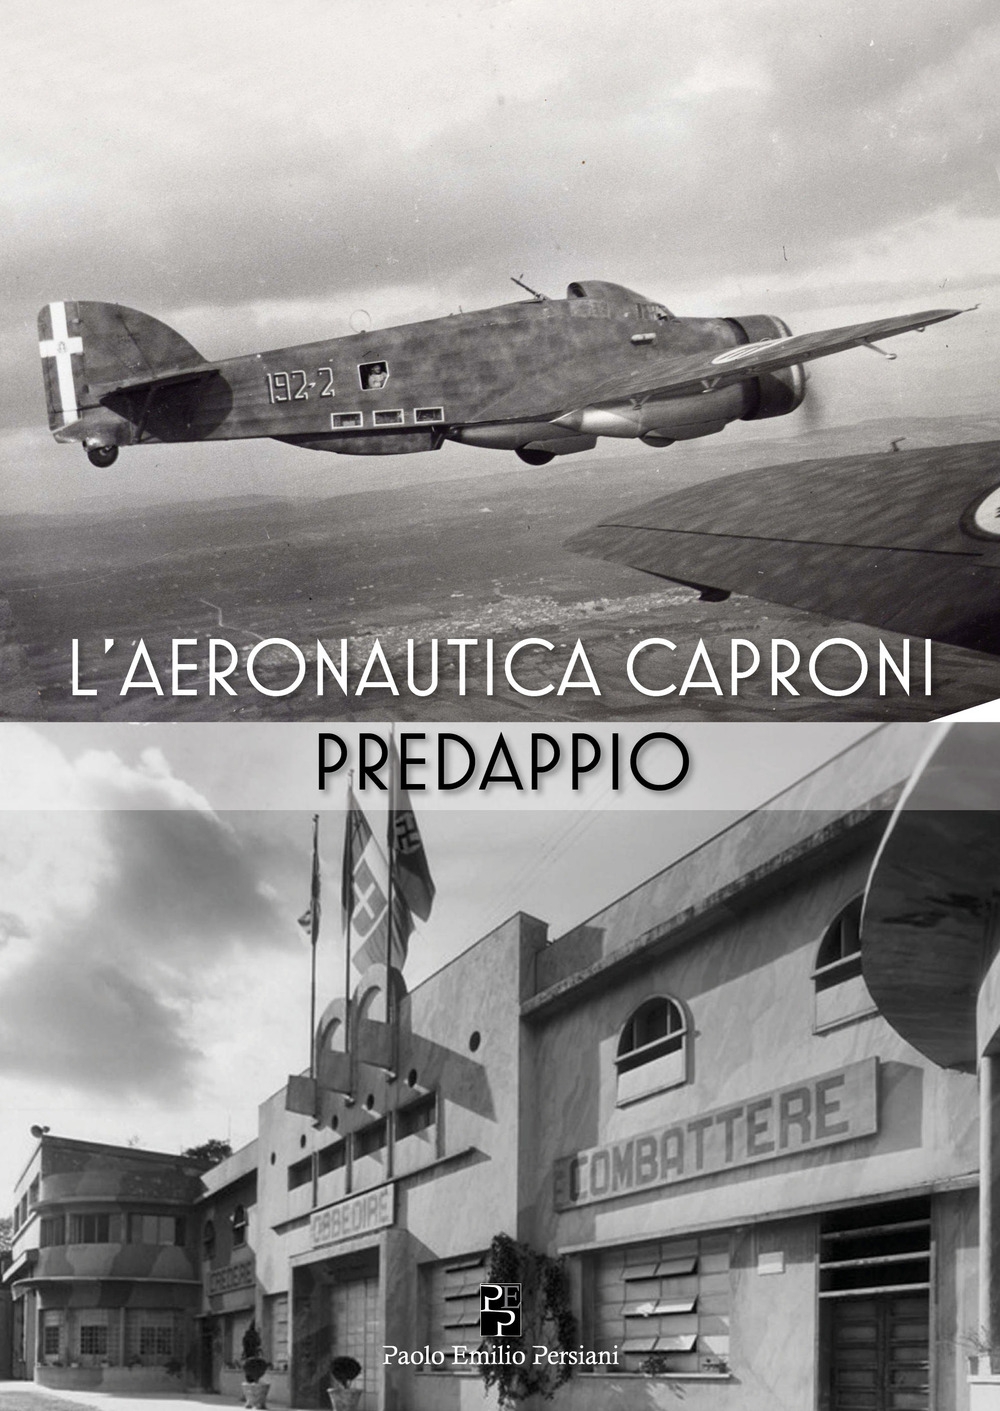 L’Aeronautica Caproni – Predappio